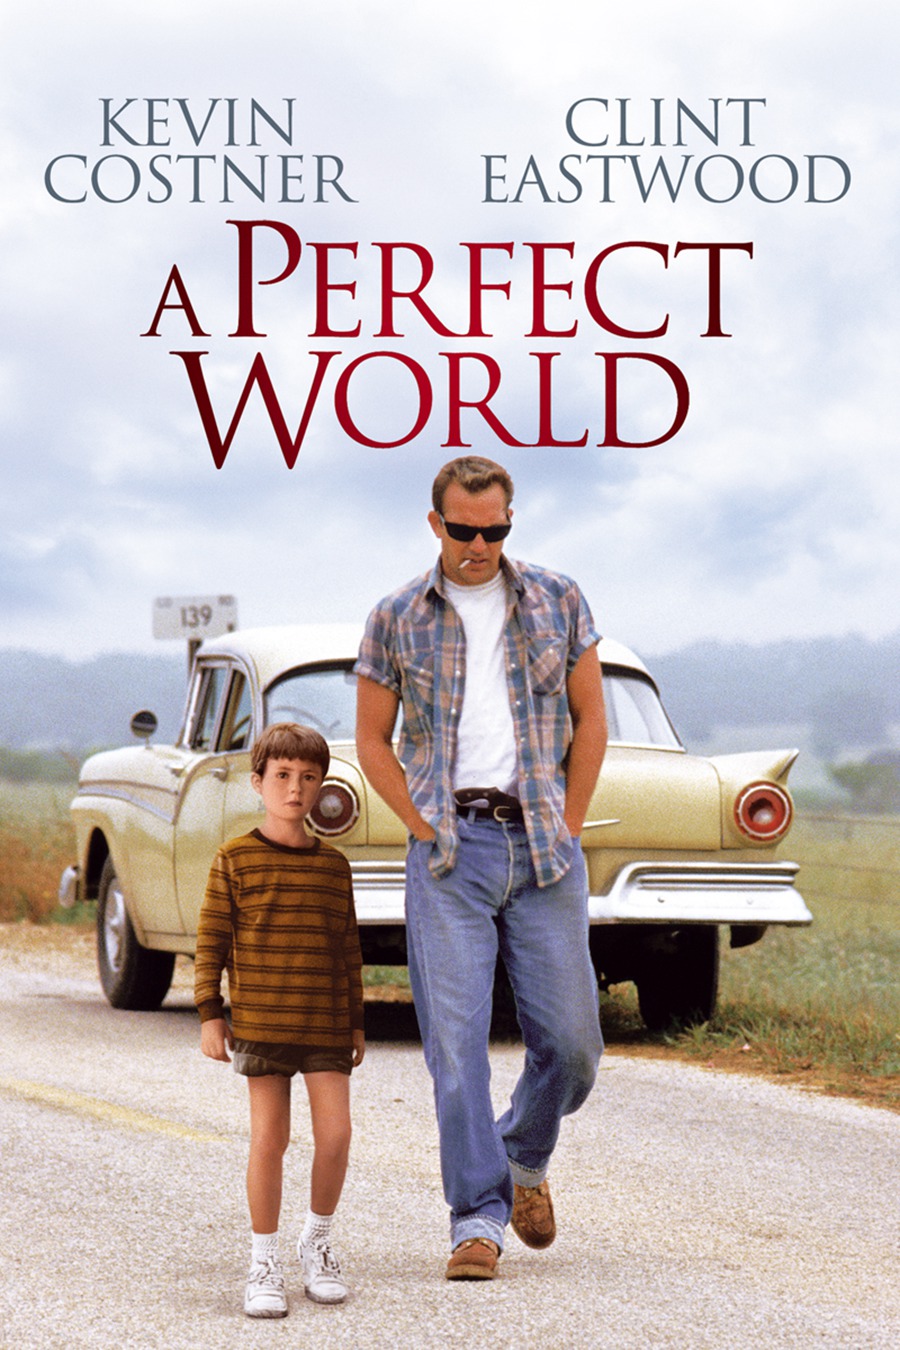 完美的世界 蓝光原盘下载+高清MKV版/强盗保镳 /1993 A Perfect World 32.24G